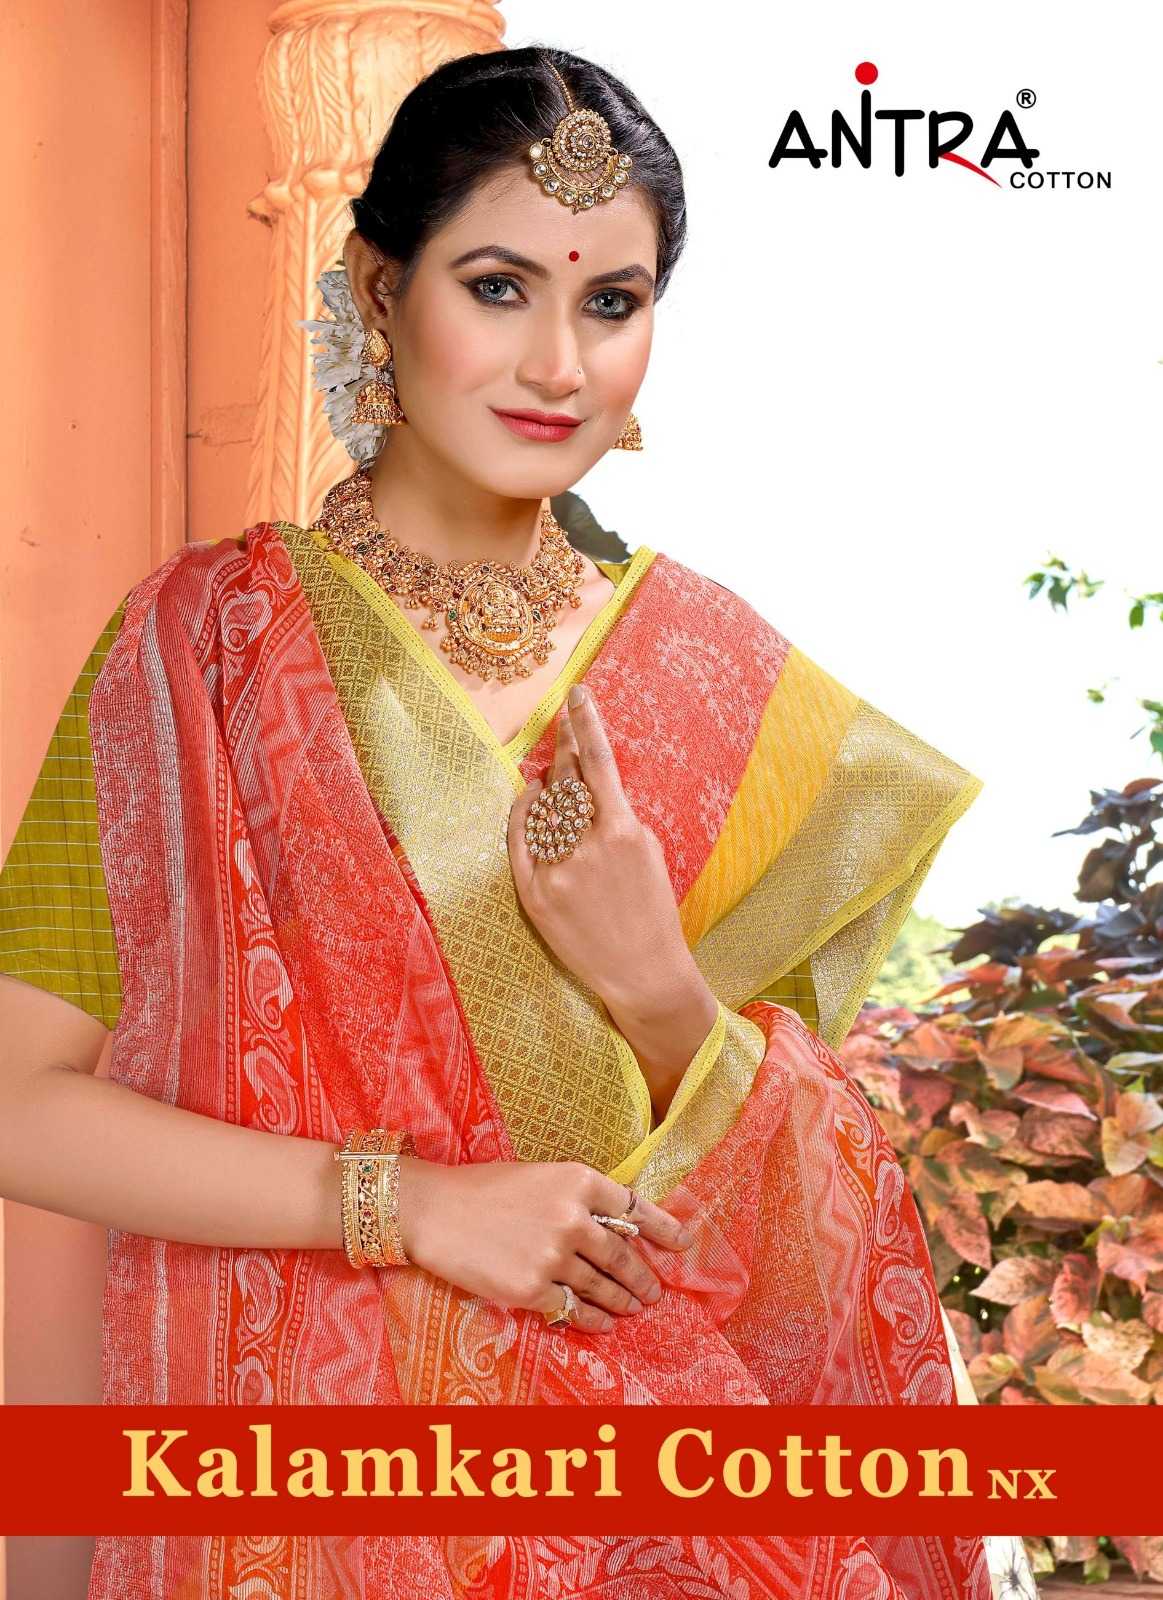 antra kalamkari cotton nx vol 1 casual wear sarees